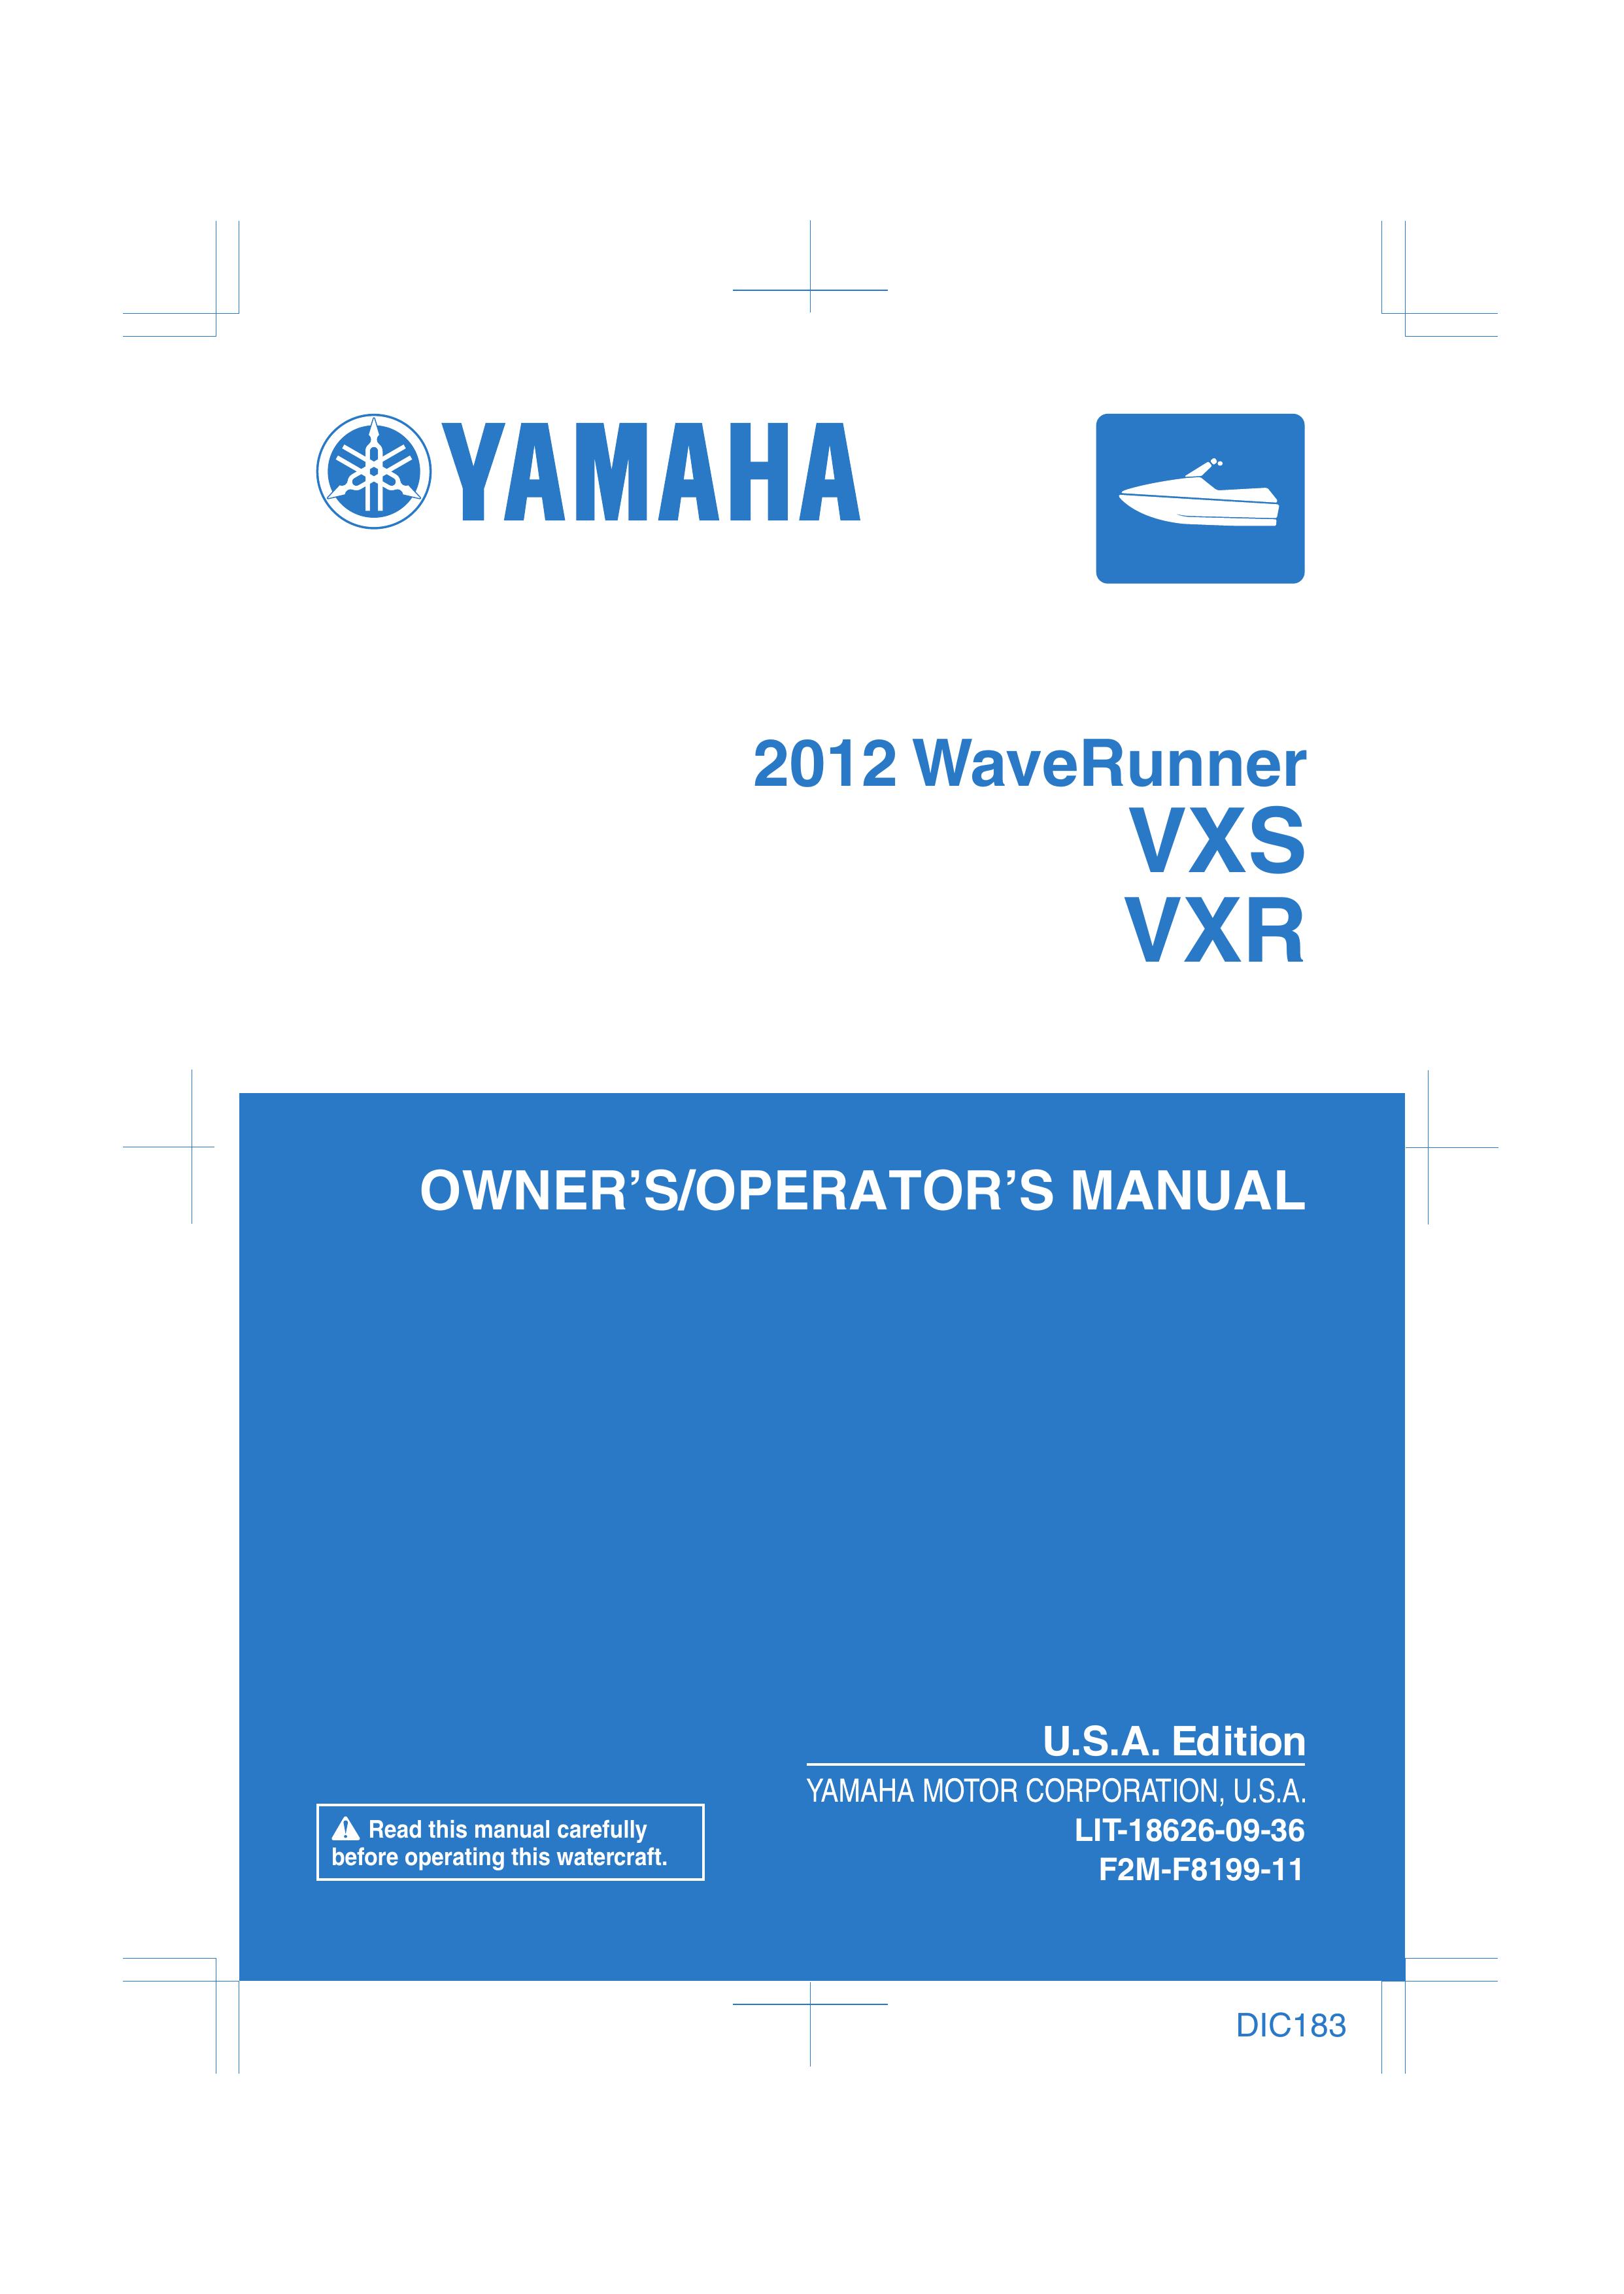 Yamaha VXR Marine Sanitation System User Manual